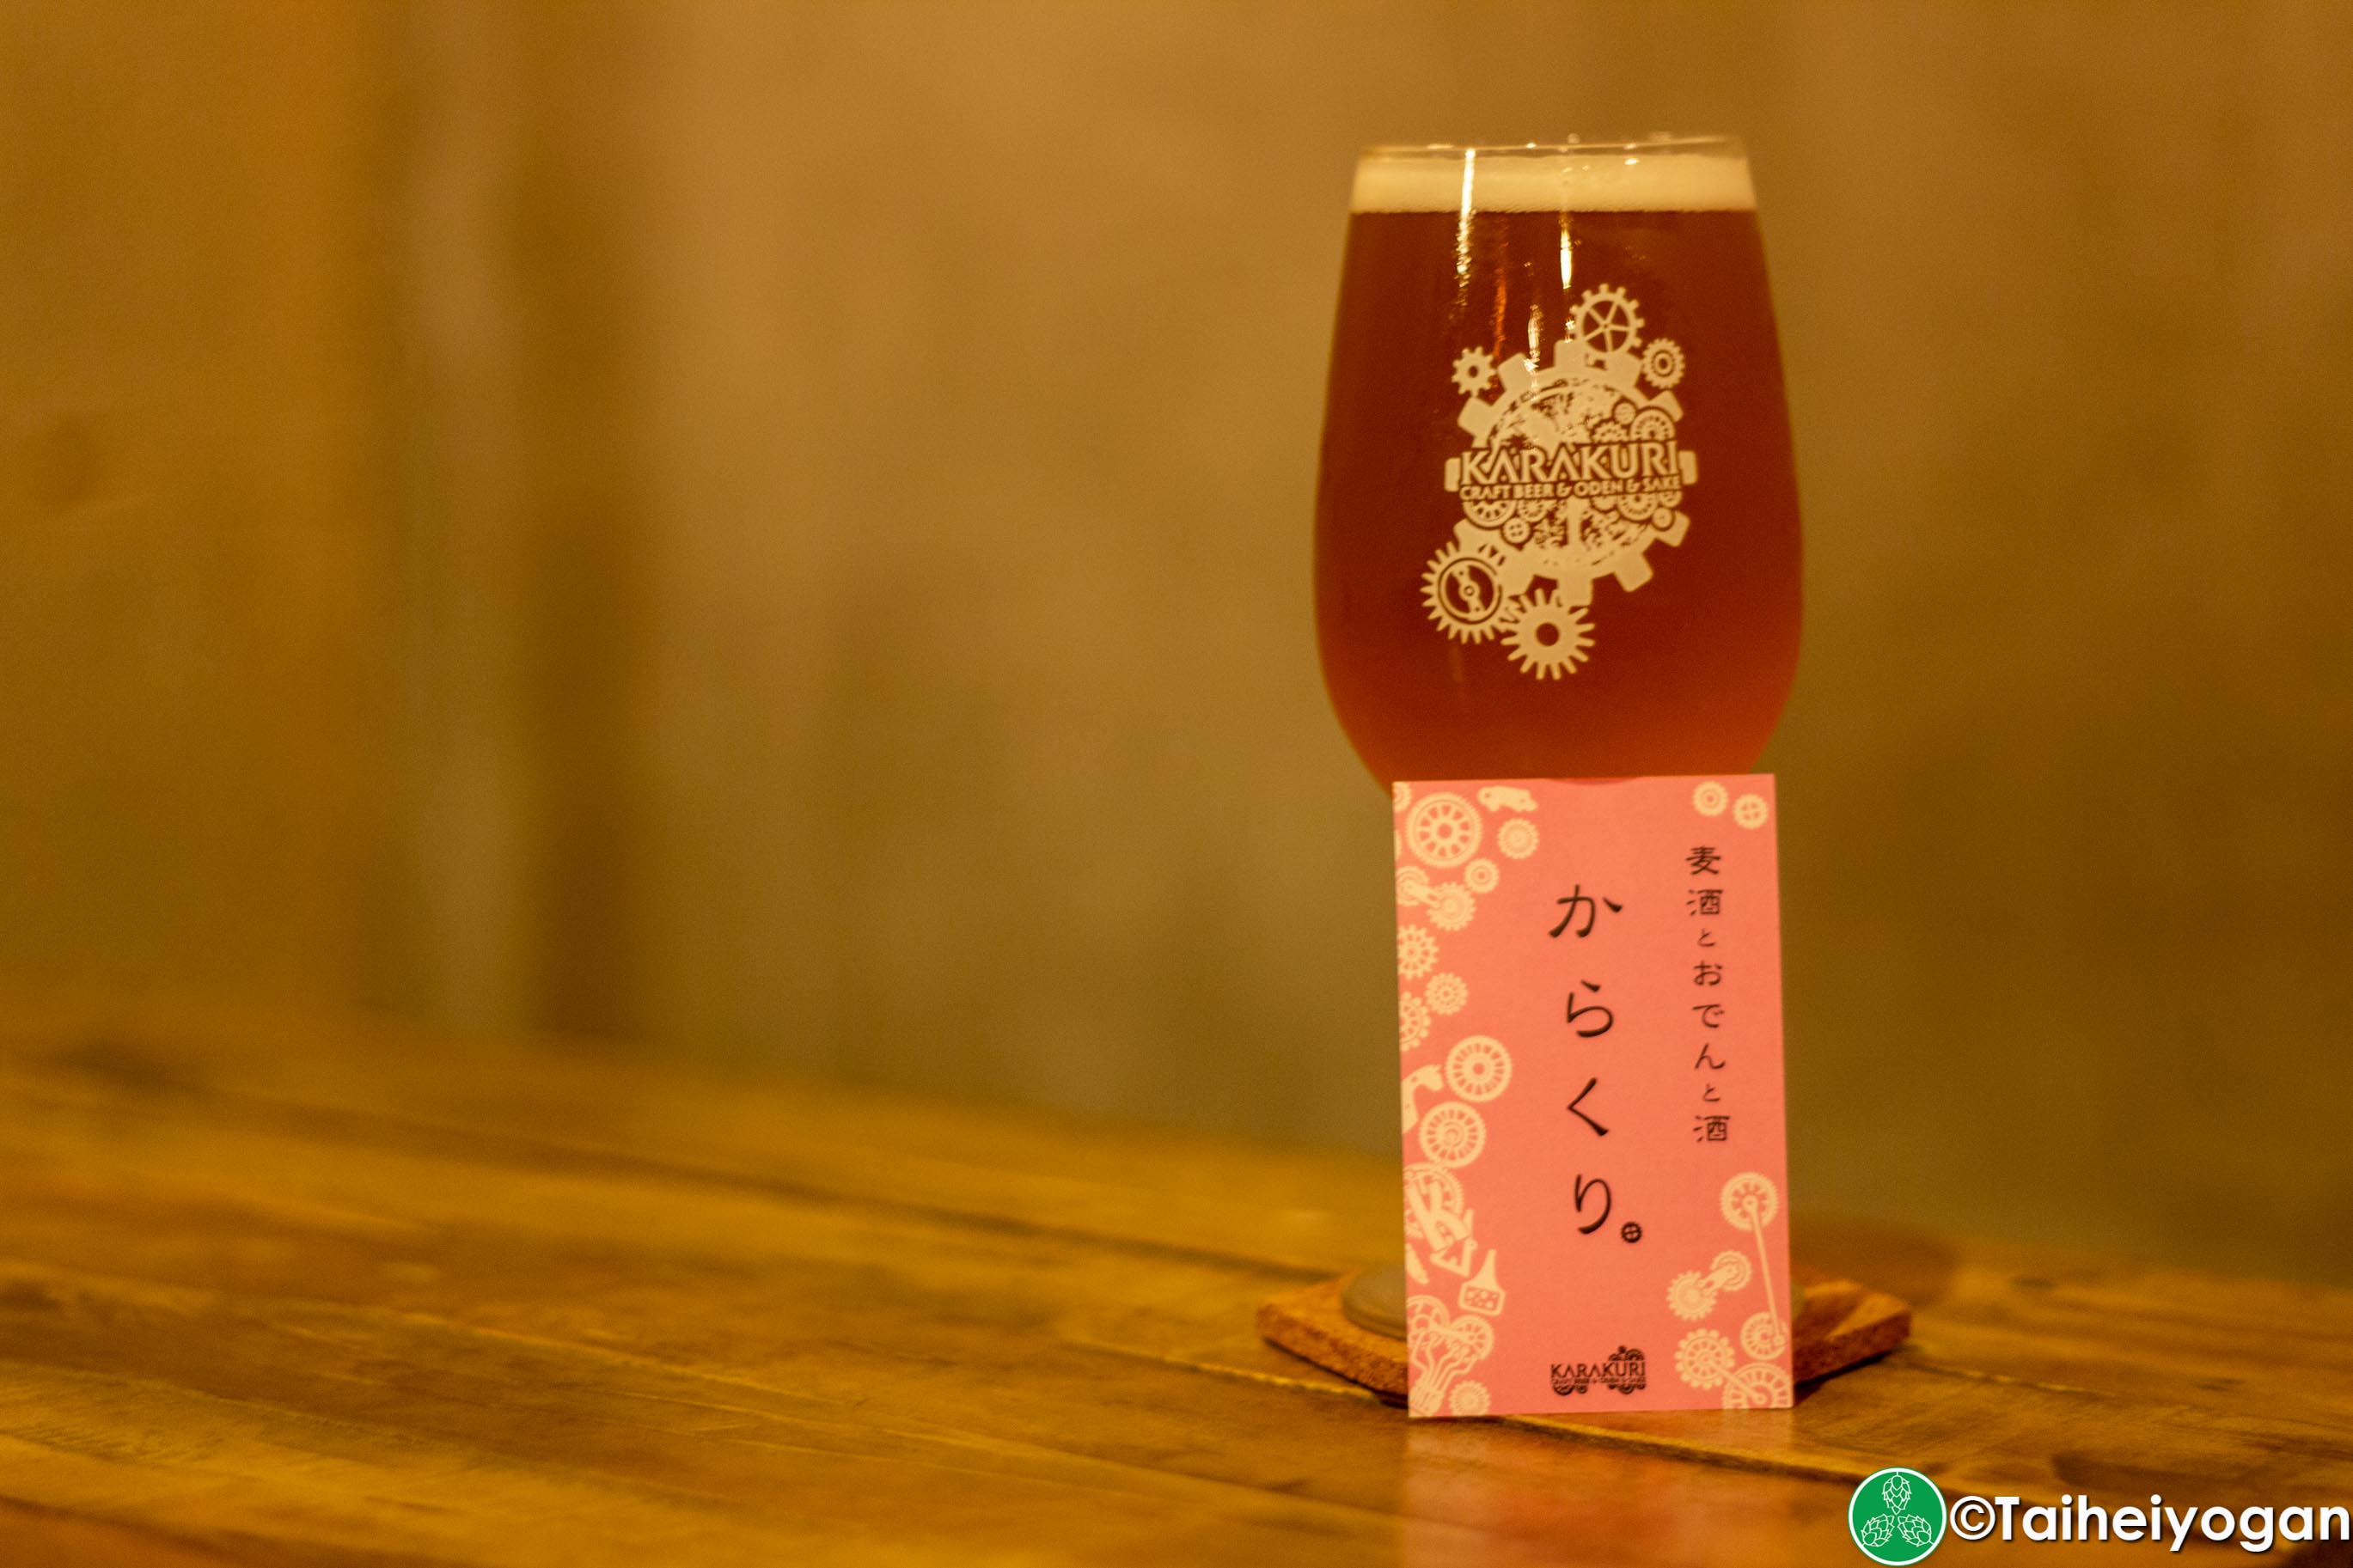 Karakuri Craft Beer & Oden & Sake - Menu - Craft Beer